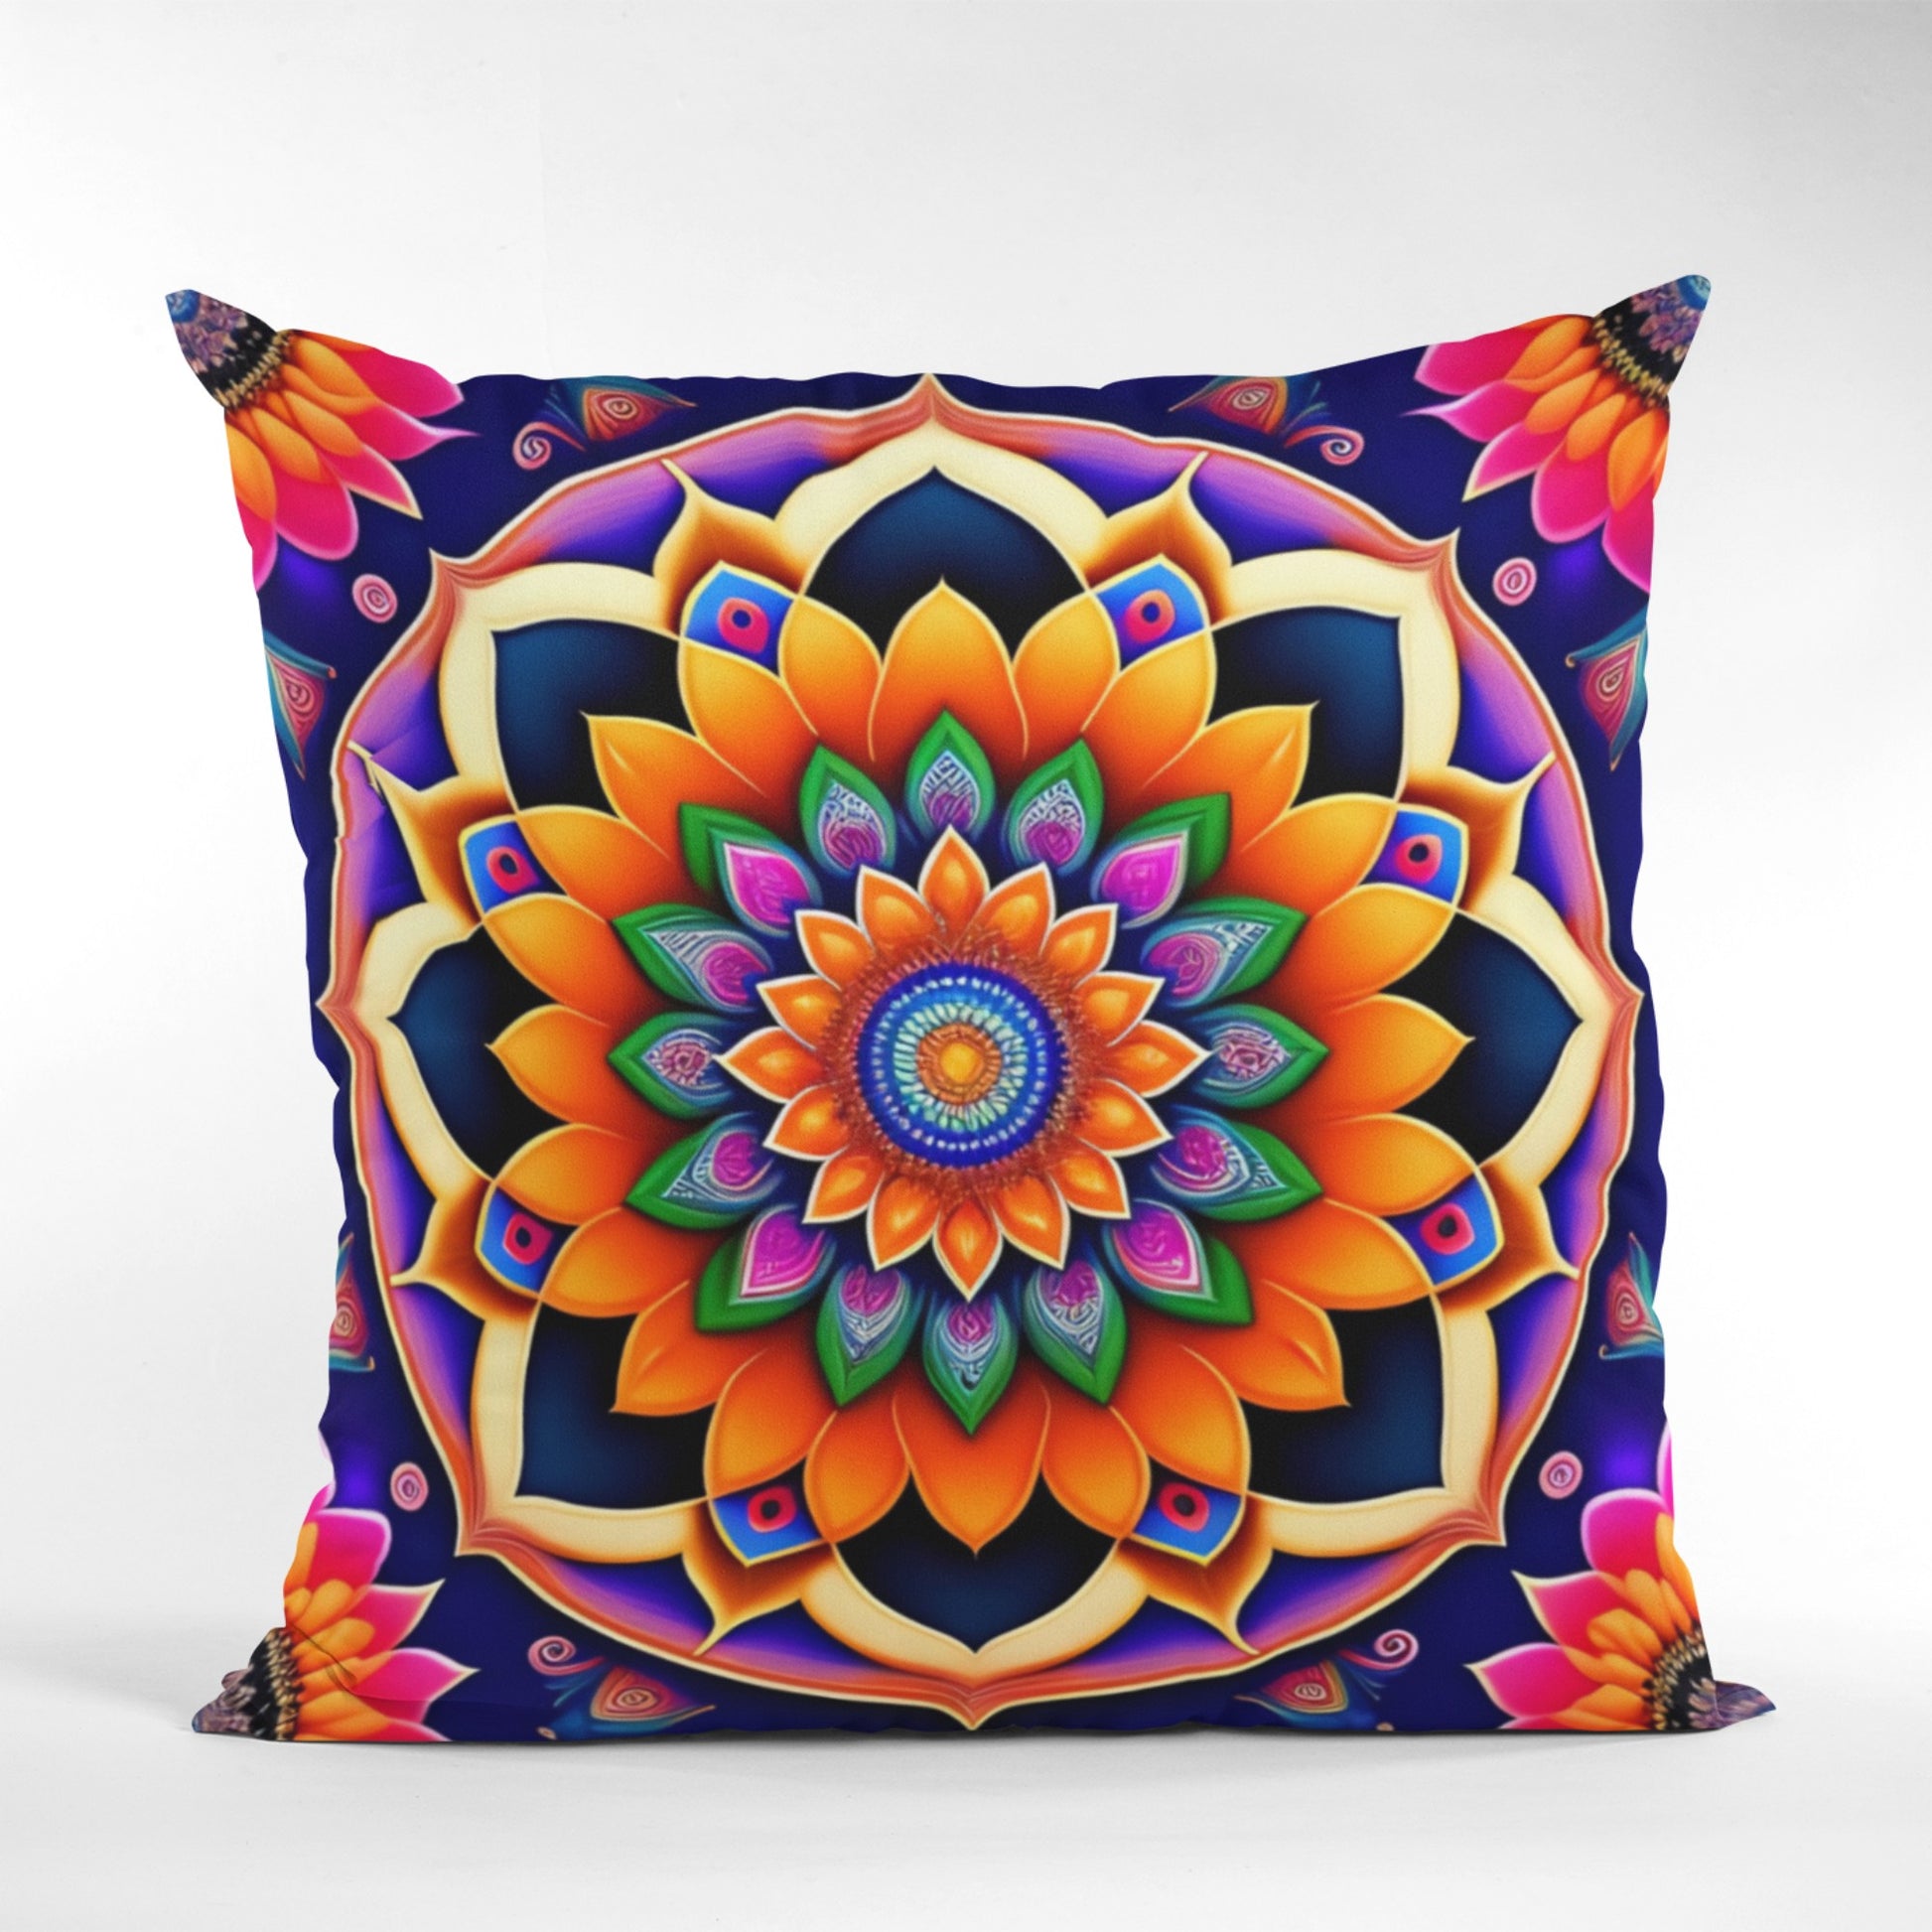 Stylish Bohemian Pillow with Mandala